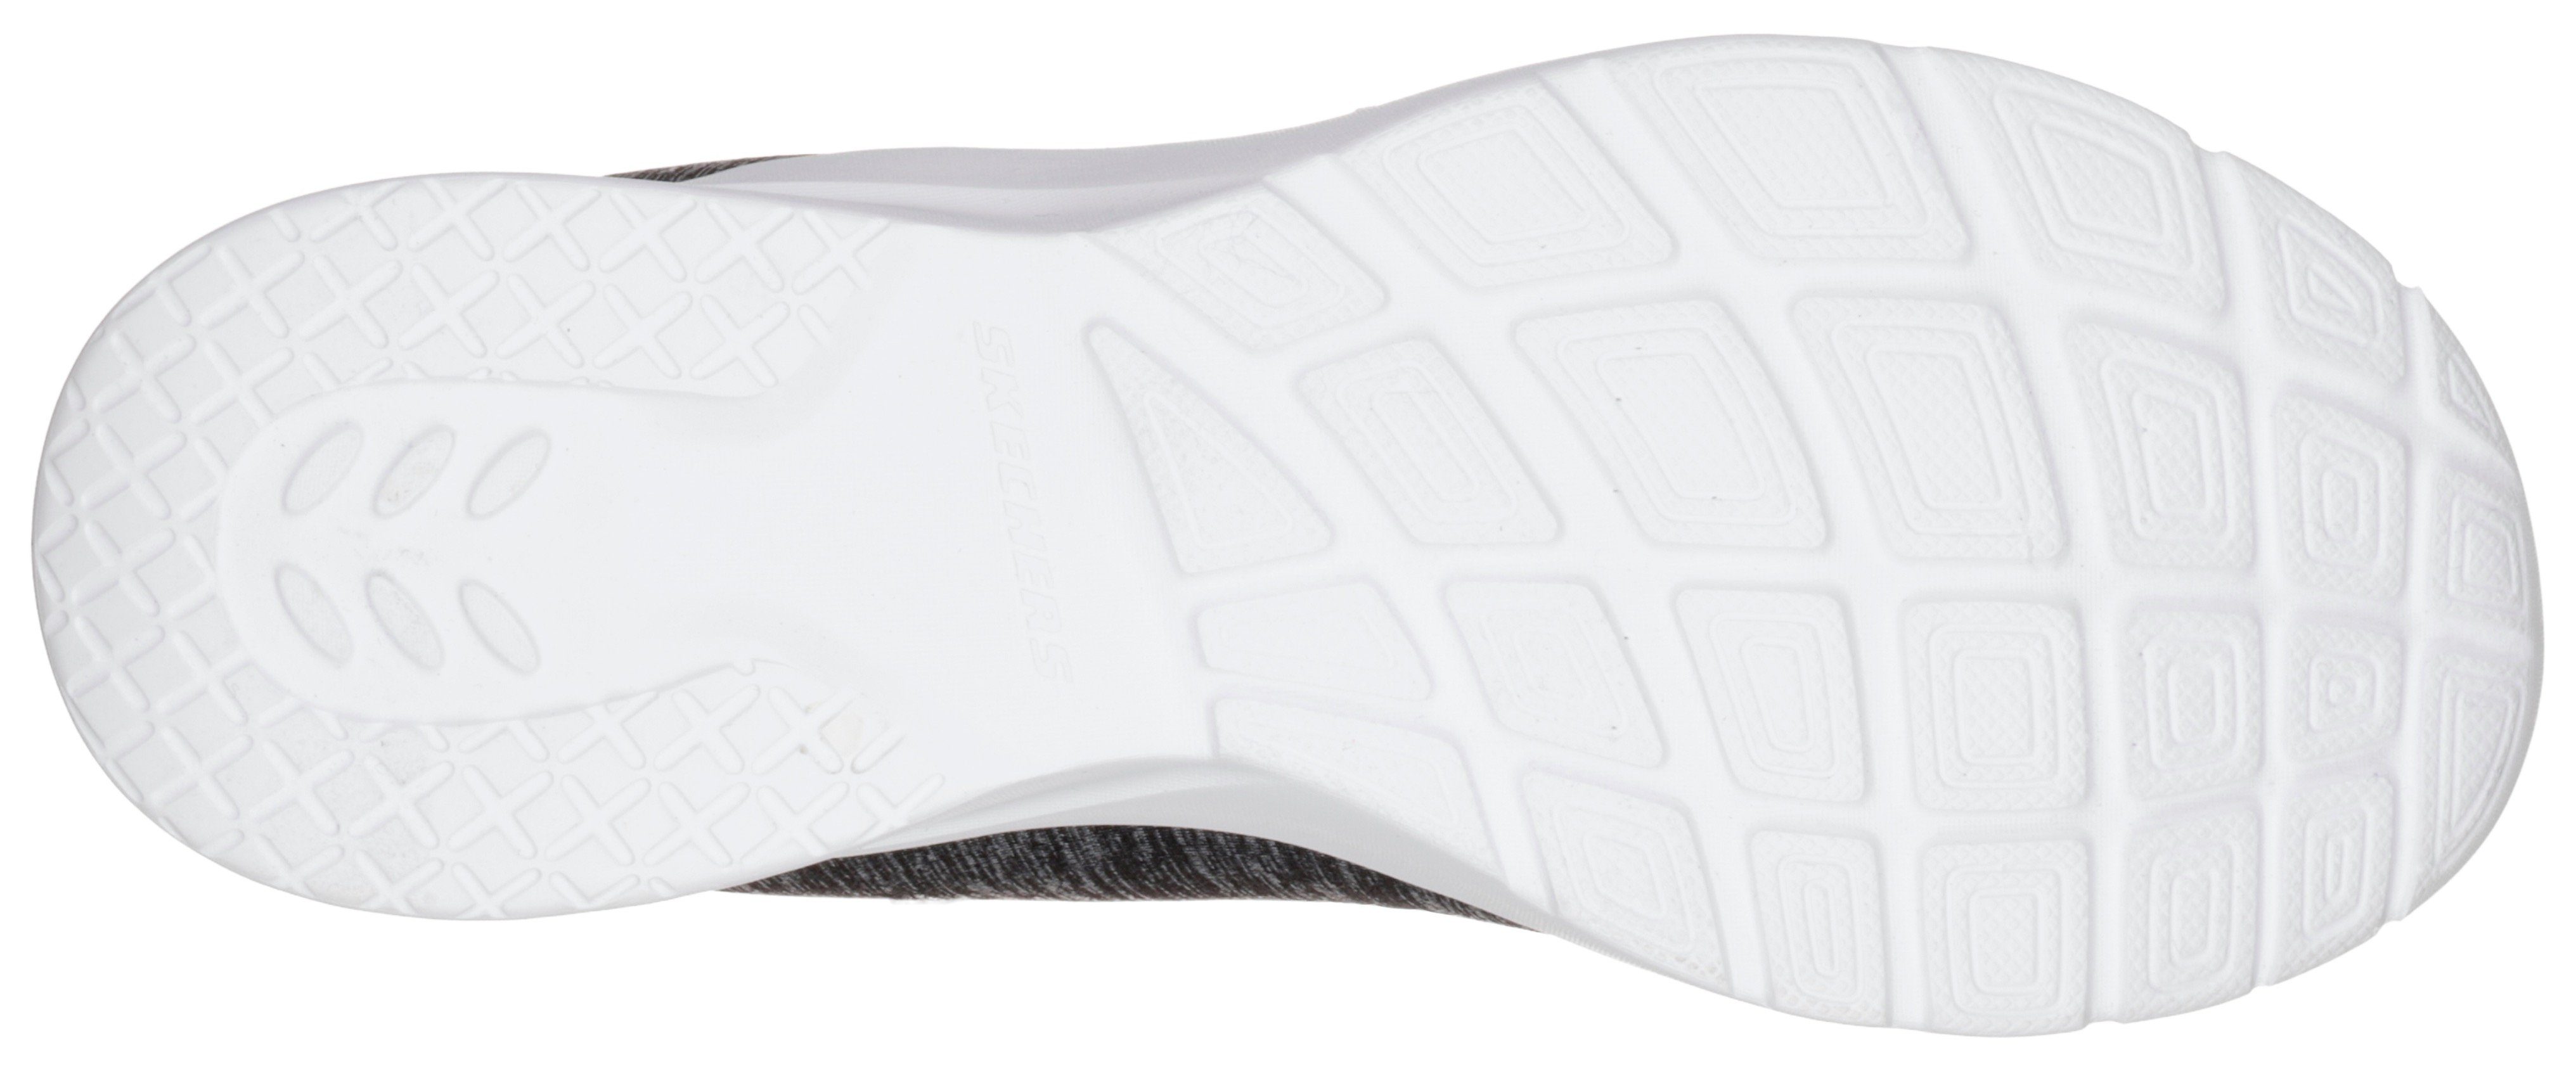 für 2.0-IN Sneaker A Skechers Maschinenwäsche FLASH schwarz-pink geeignet Slip-On DYNAMIGHT